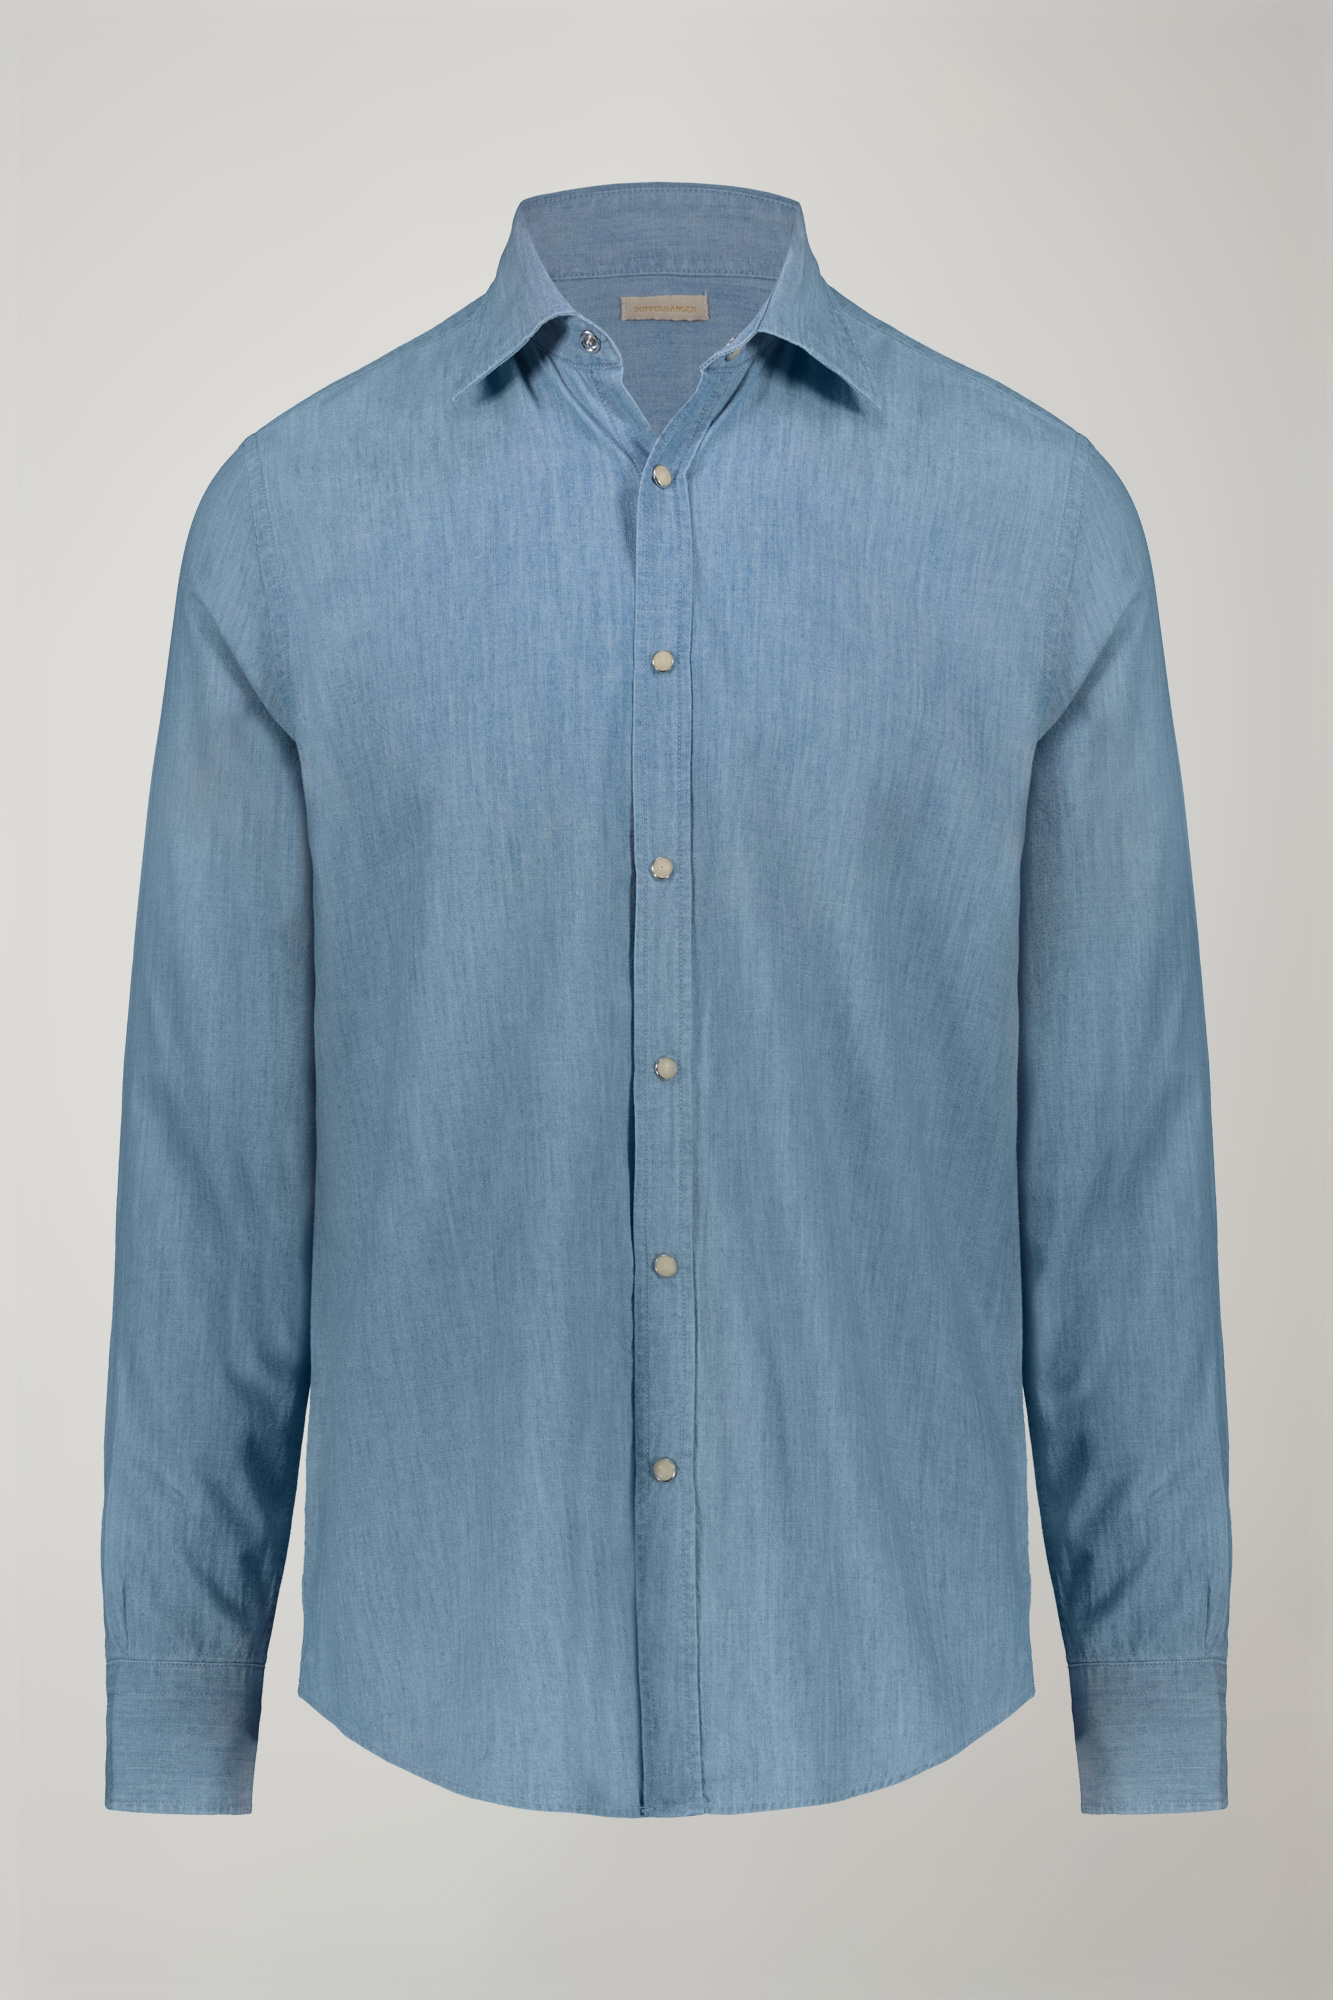 Camicia casual uomo collo classico 100% cotone tessuto chambray denim chiaro comfort fit image number null